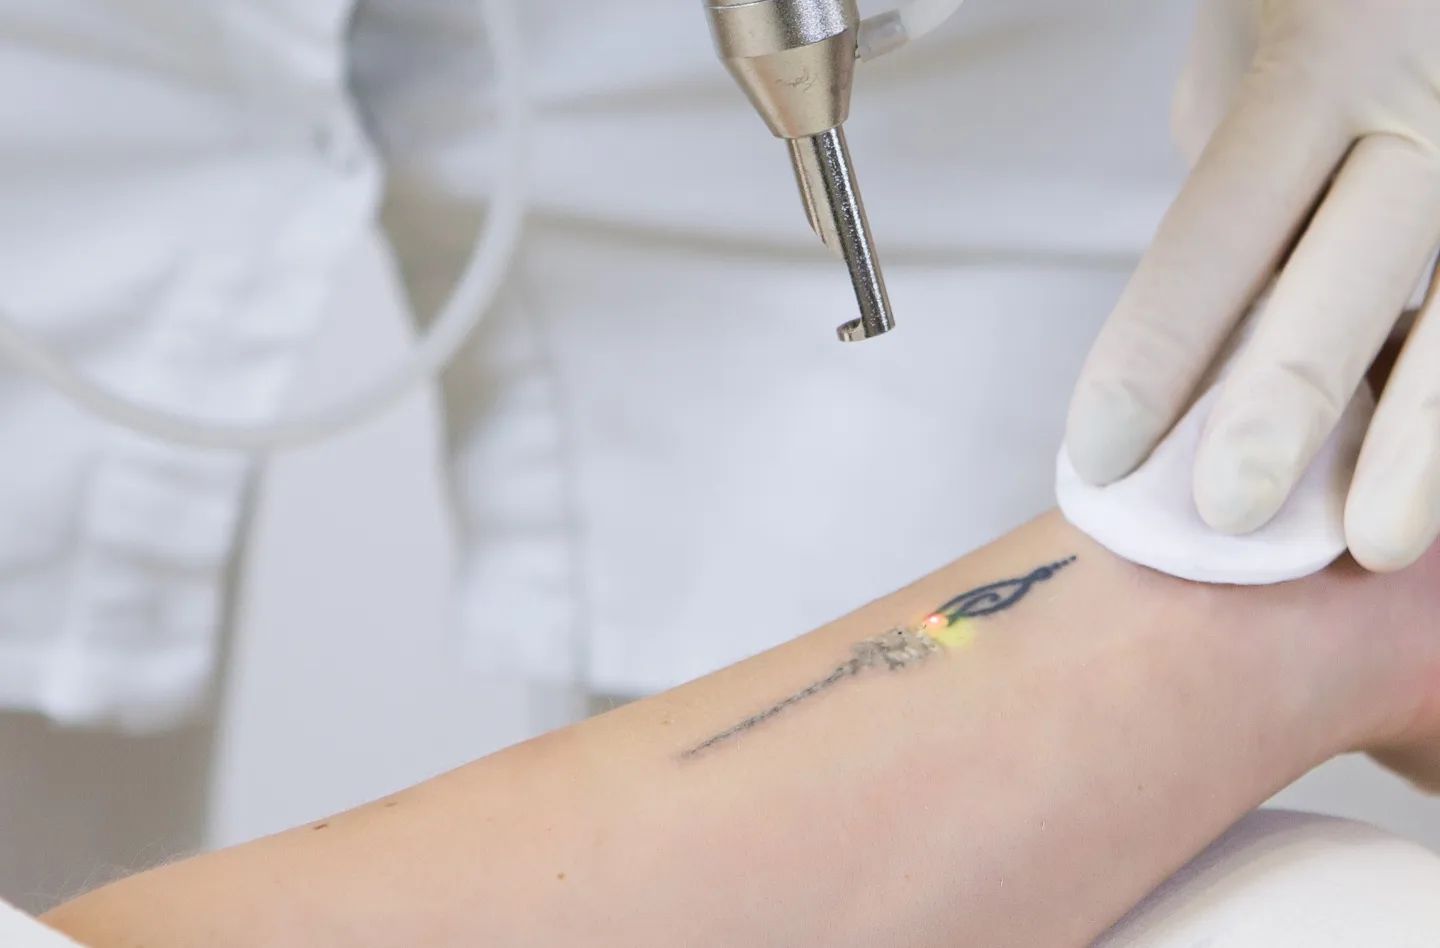 Fjernelse af tatovering i Køge nær Roskilde & Næstved